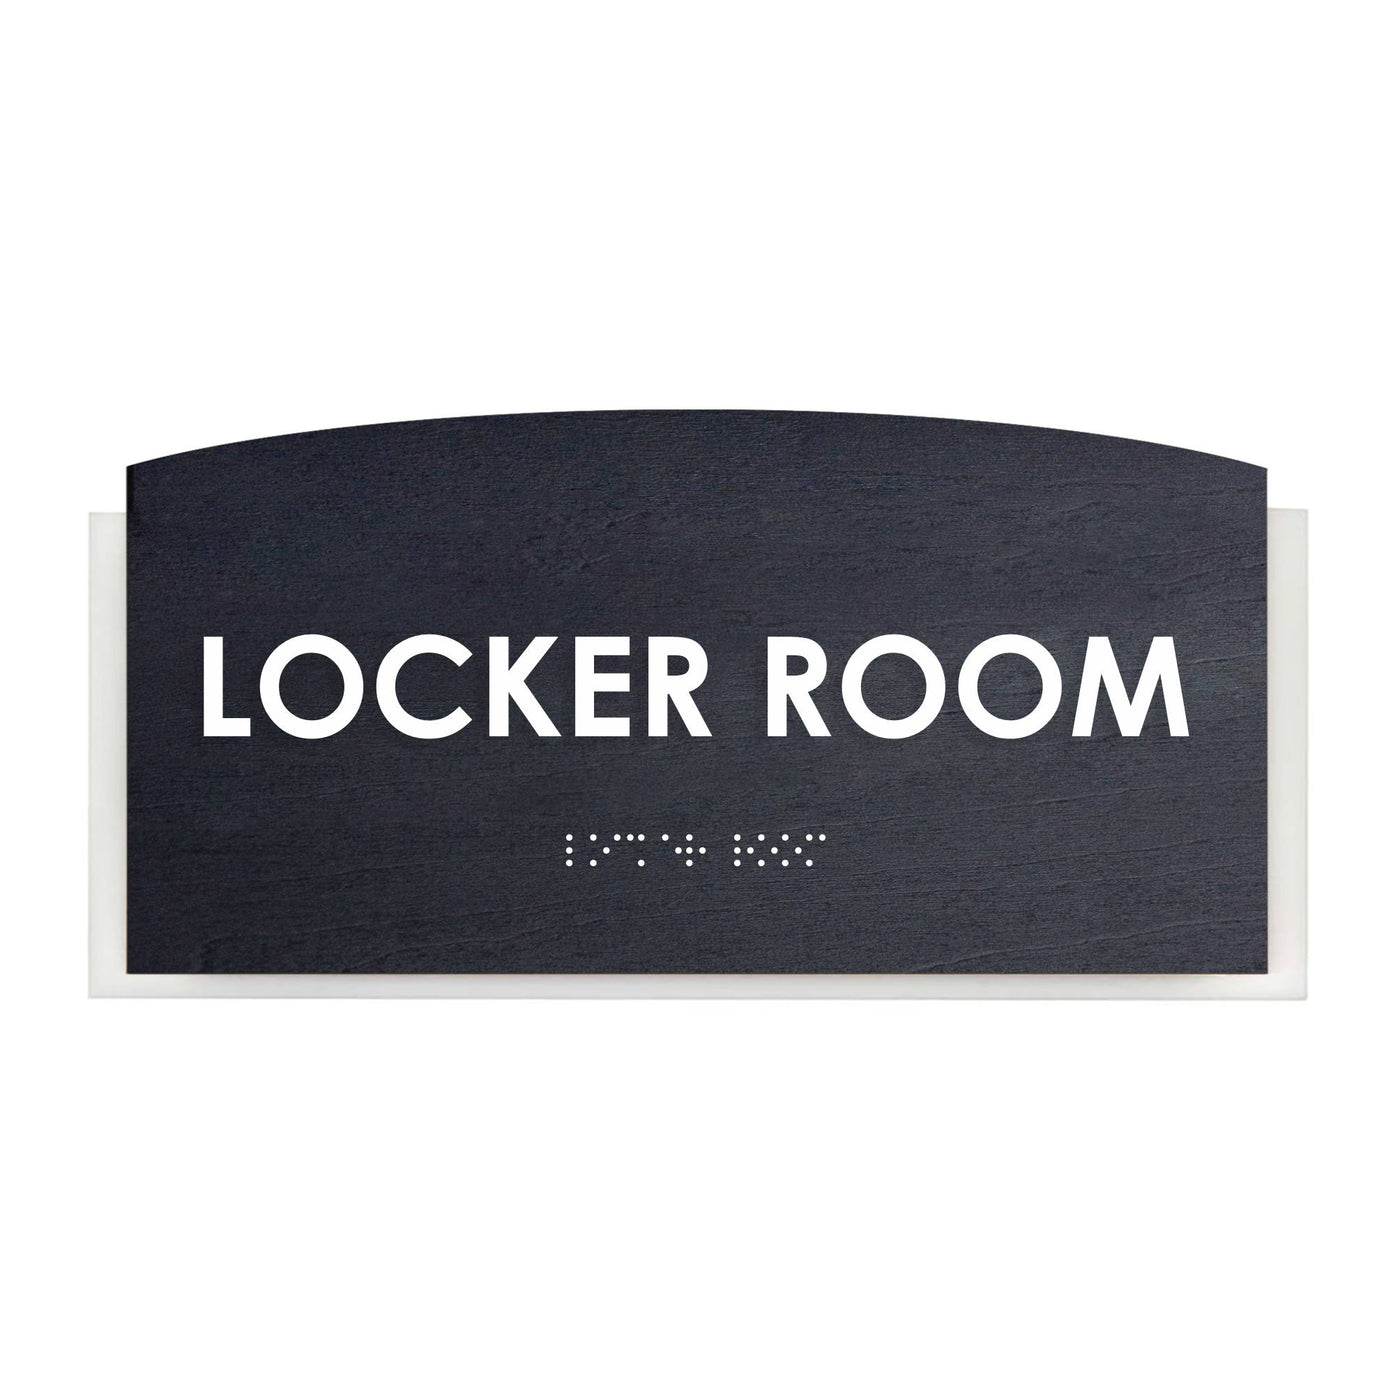 Wood Locker Room Door Sign "Scandza" Design